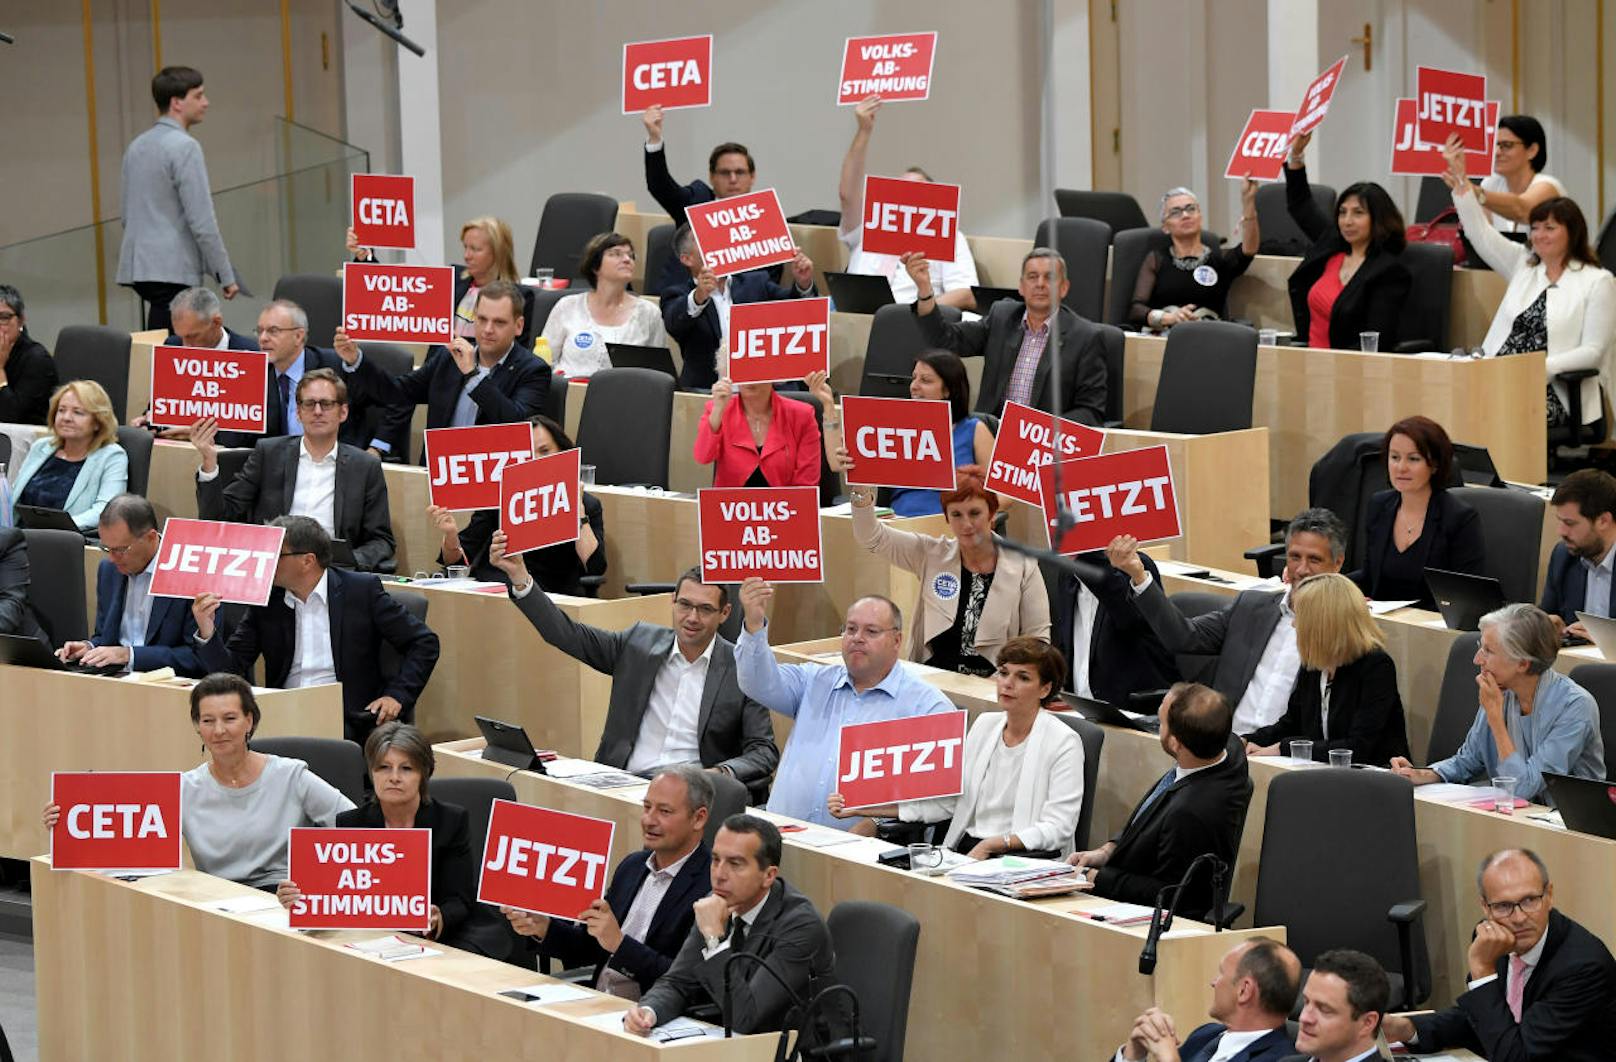 Abgeordnete der SPÖ kritisieren den CETA-Beschluss durch die Regierung.